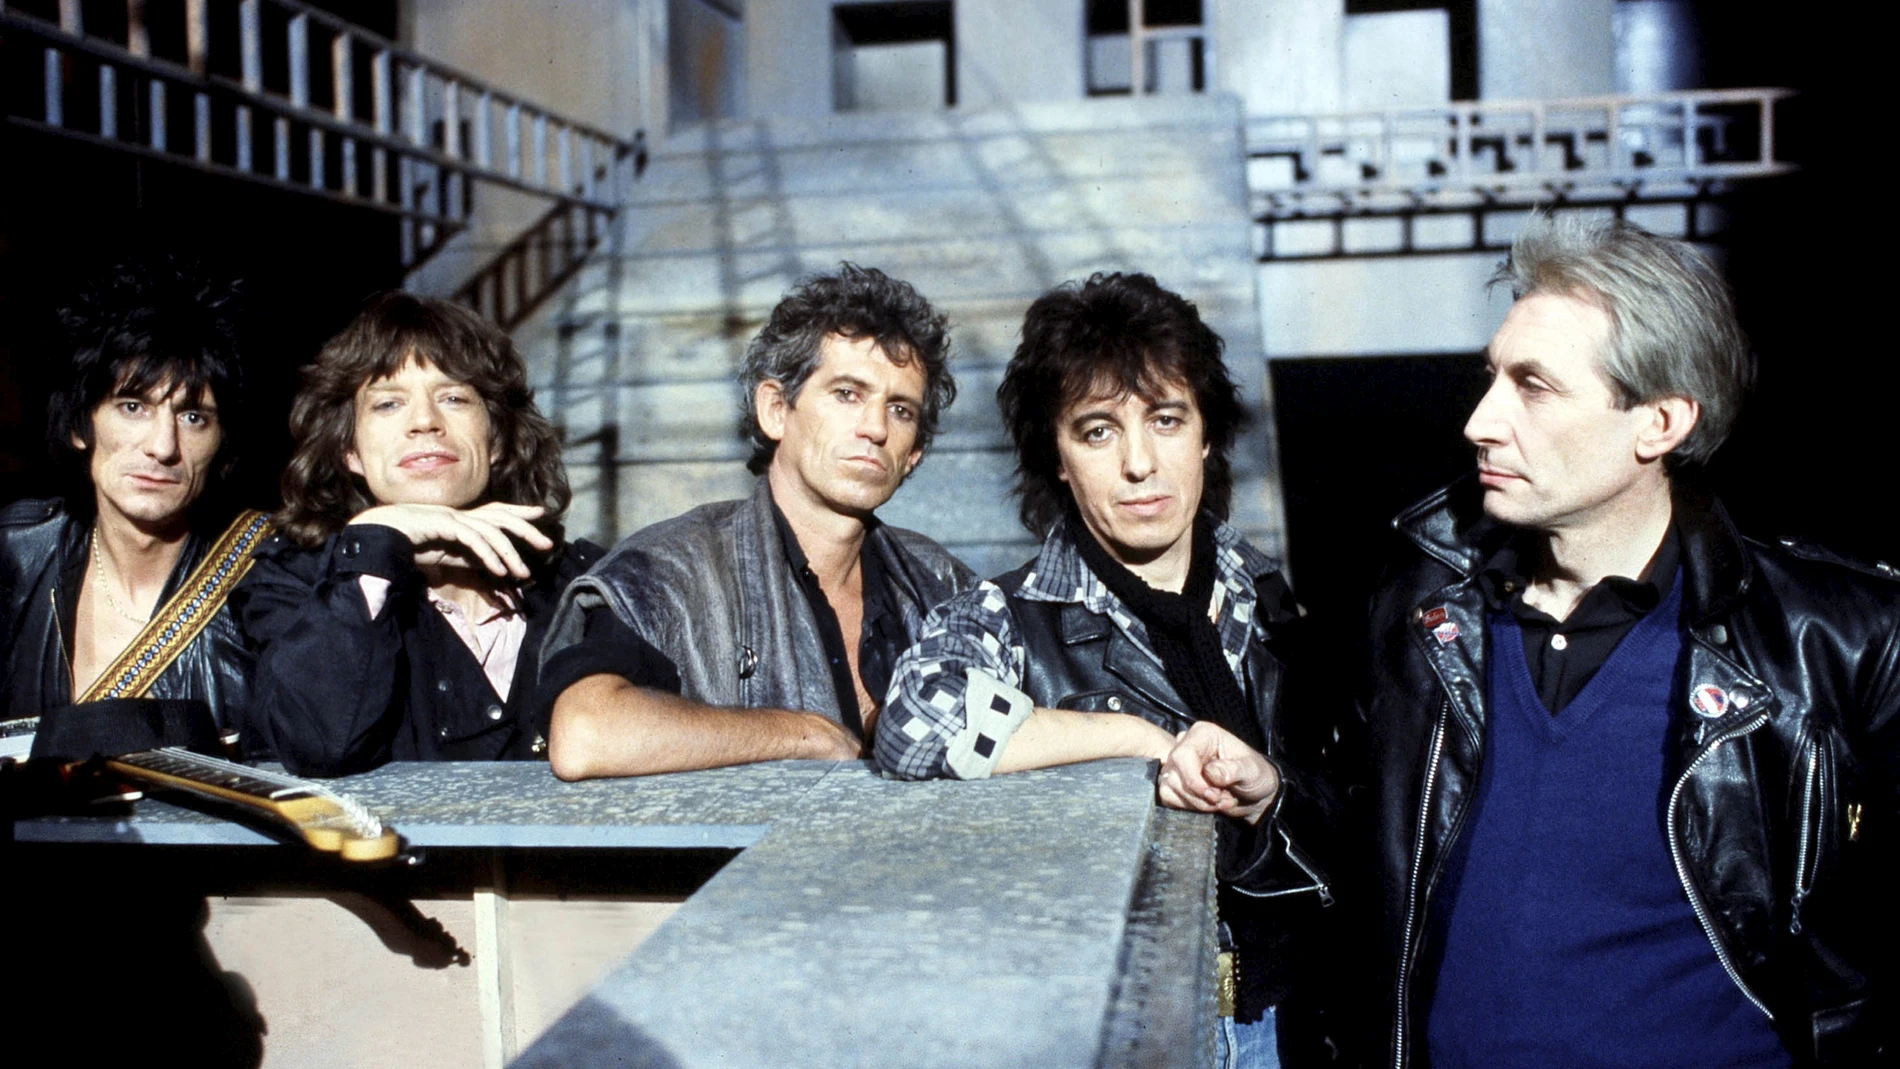 Desde la izquierda, Ronnie Wood, Mick Jagger, Keith Richards, Bill Wyman y Charlie Watts, miembros de los Rolling Stones, en 1985